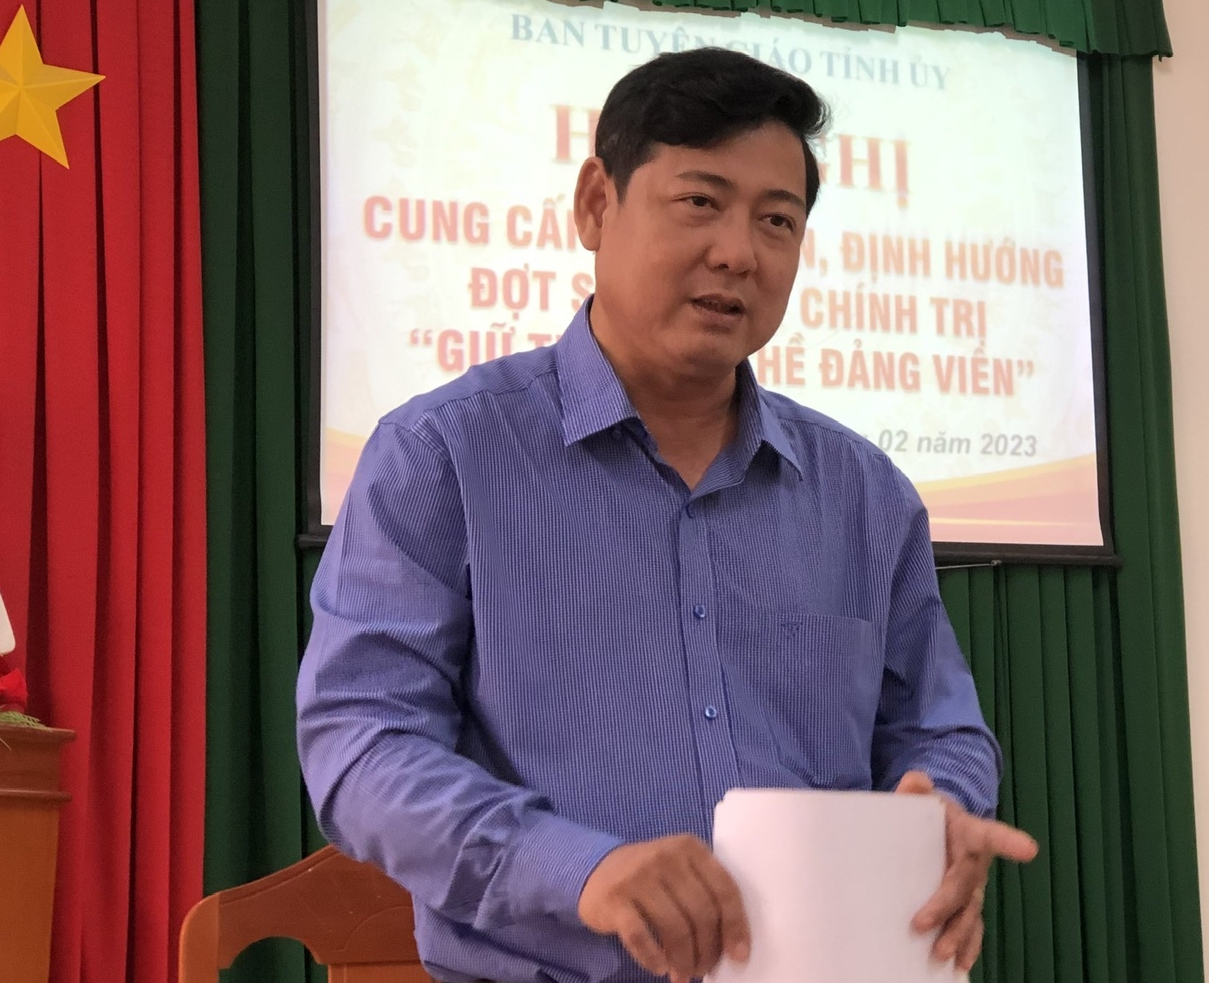 Bình Thuận: Đảng viên phải tự soi lại mình, tự sửa mình, đảng viên yếu kém sẽ bị sàng lọc cho ra khỏi Đảng - Ảnh 1.